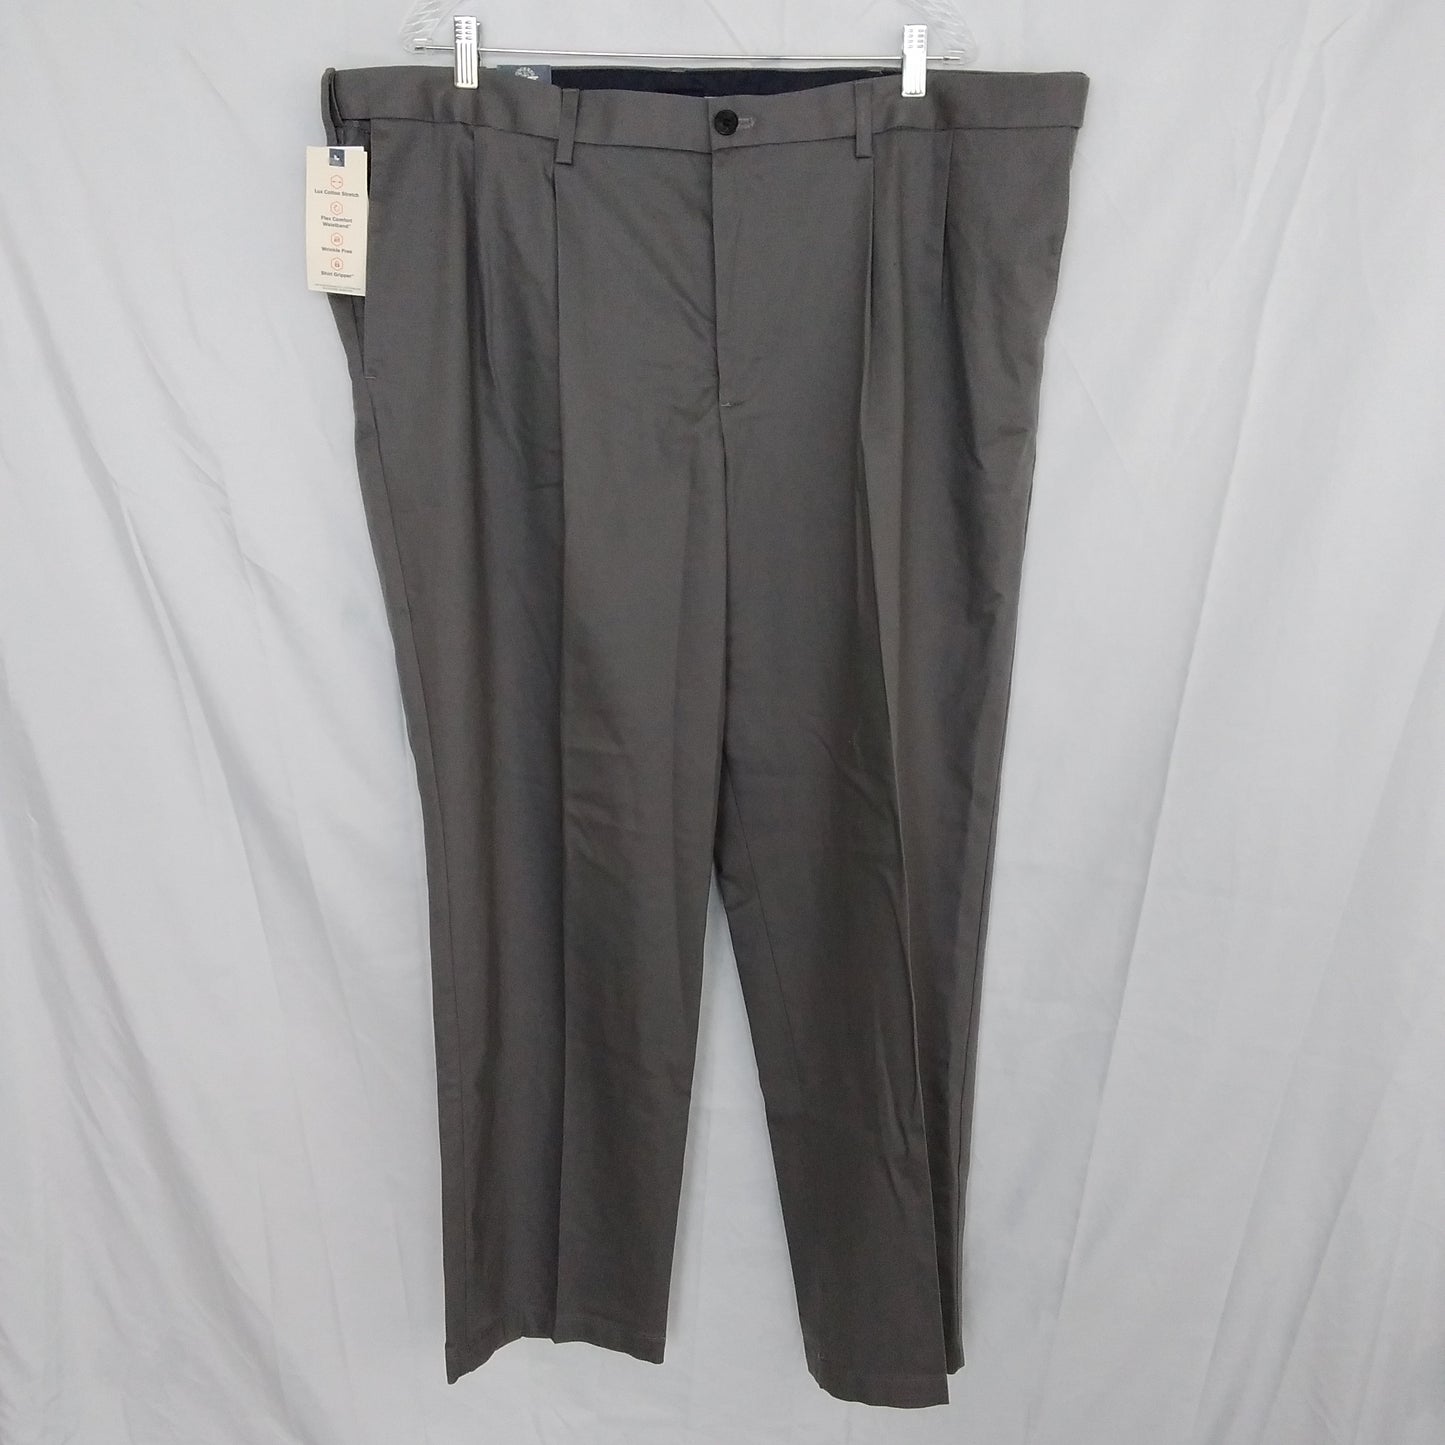 NWT - Dockers Big & Tall Gray Signature Khaki Pants - Size W44 L30